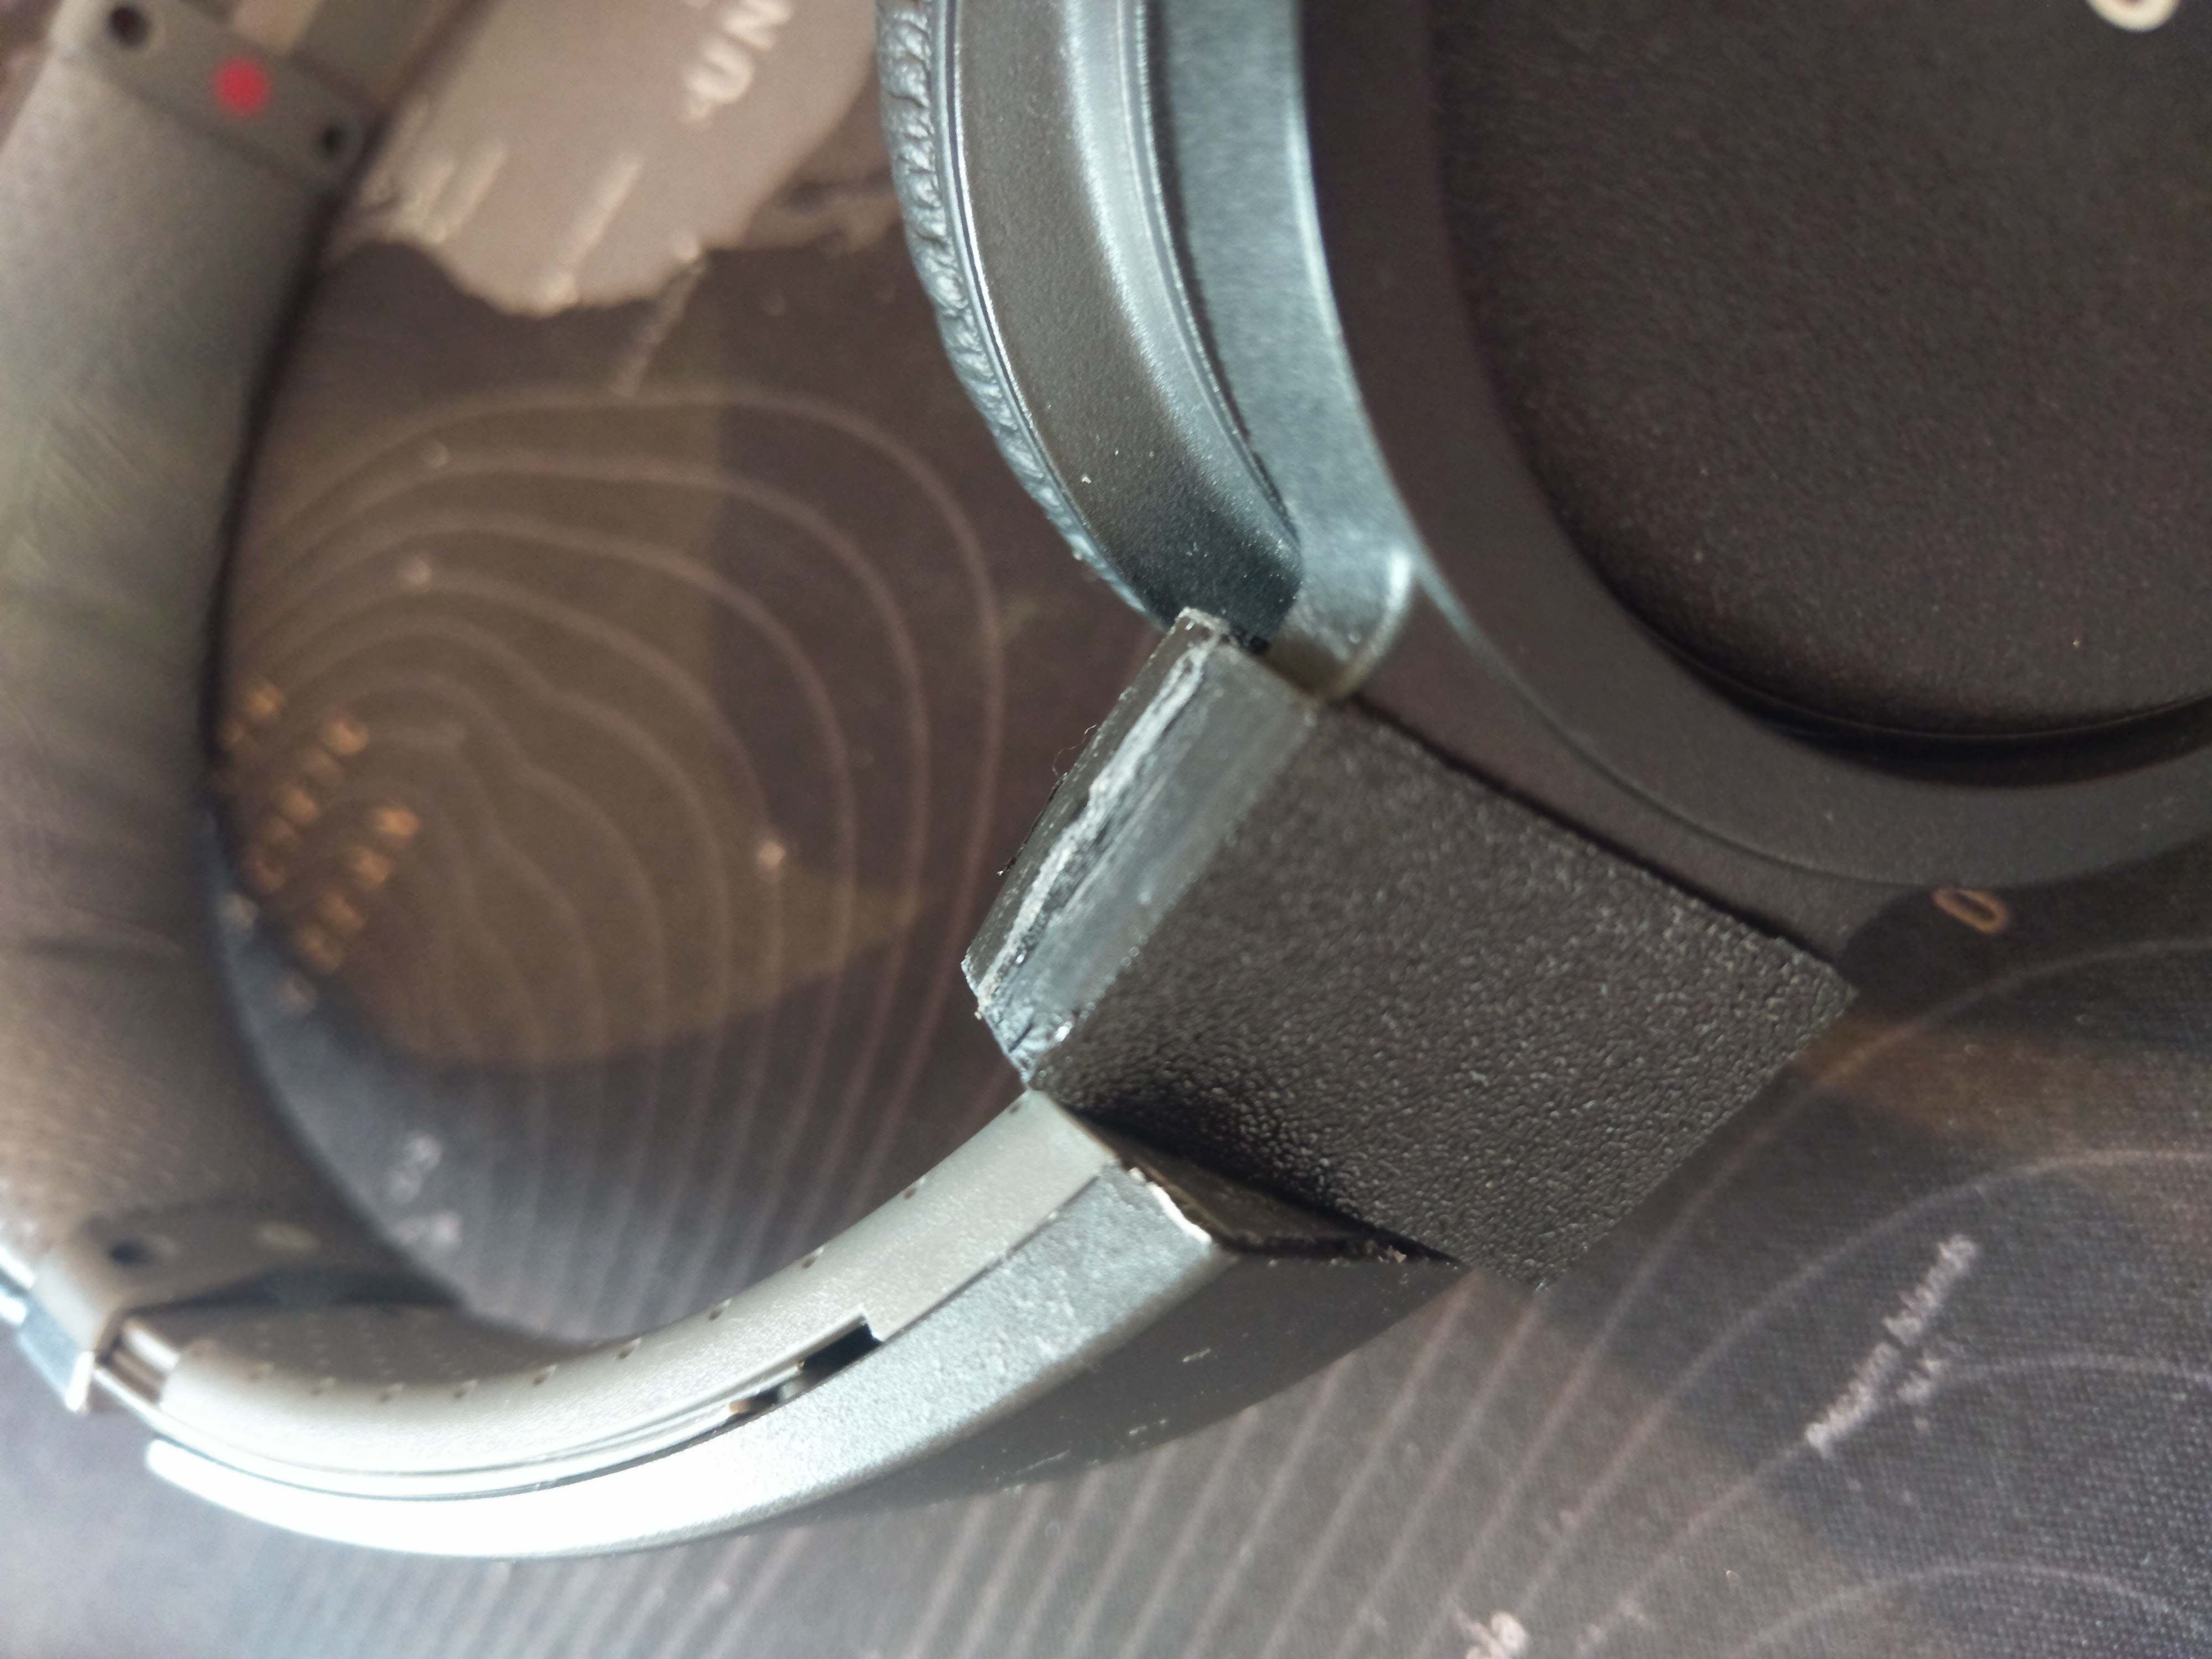 Sony MDR-ZX770BN headphones hinge fix